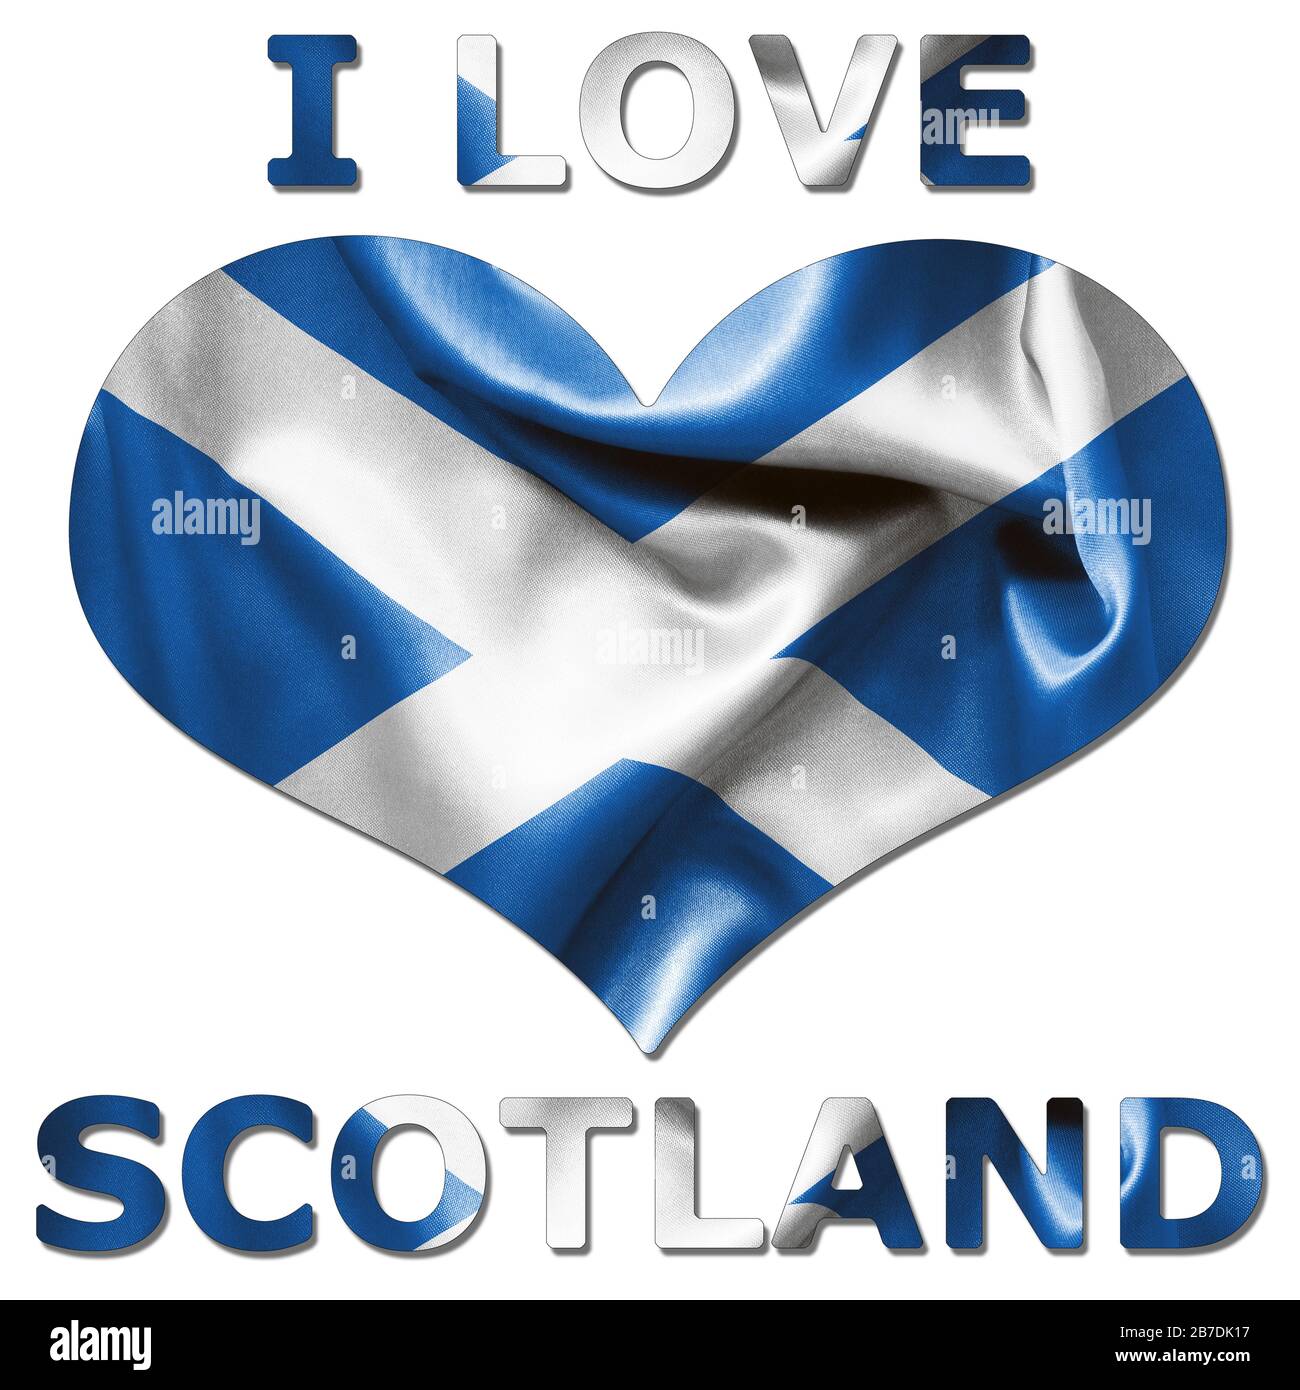 Adoro la Scozia con la texture della bandiera scozzese a forma di cuore su uno sfondo bianco isolato con un percorso di ritaglio sia con che senza l'ombra Foto Stock